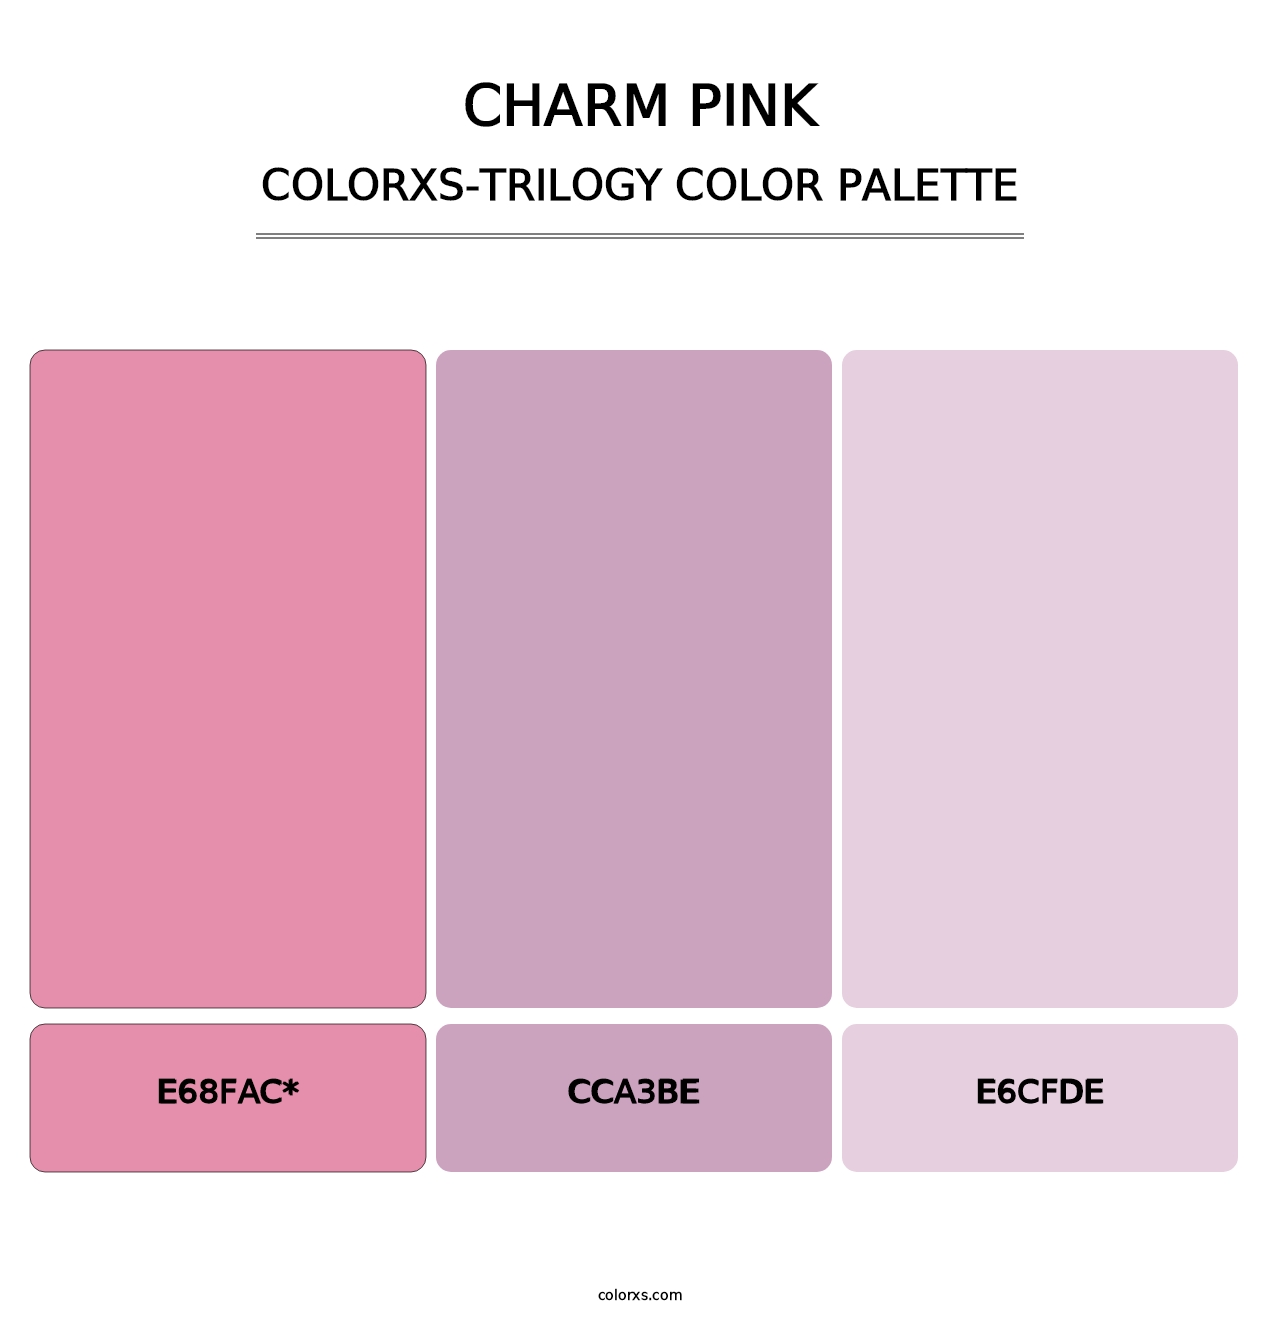 Charm Pink - Colorxs Trilogy Palette